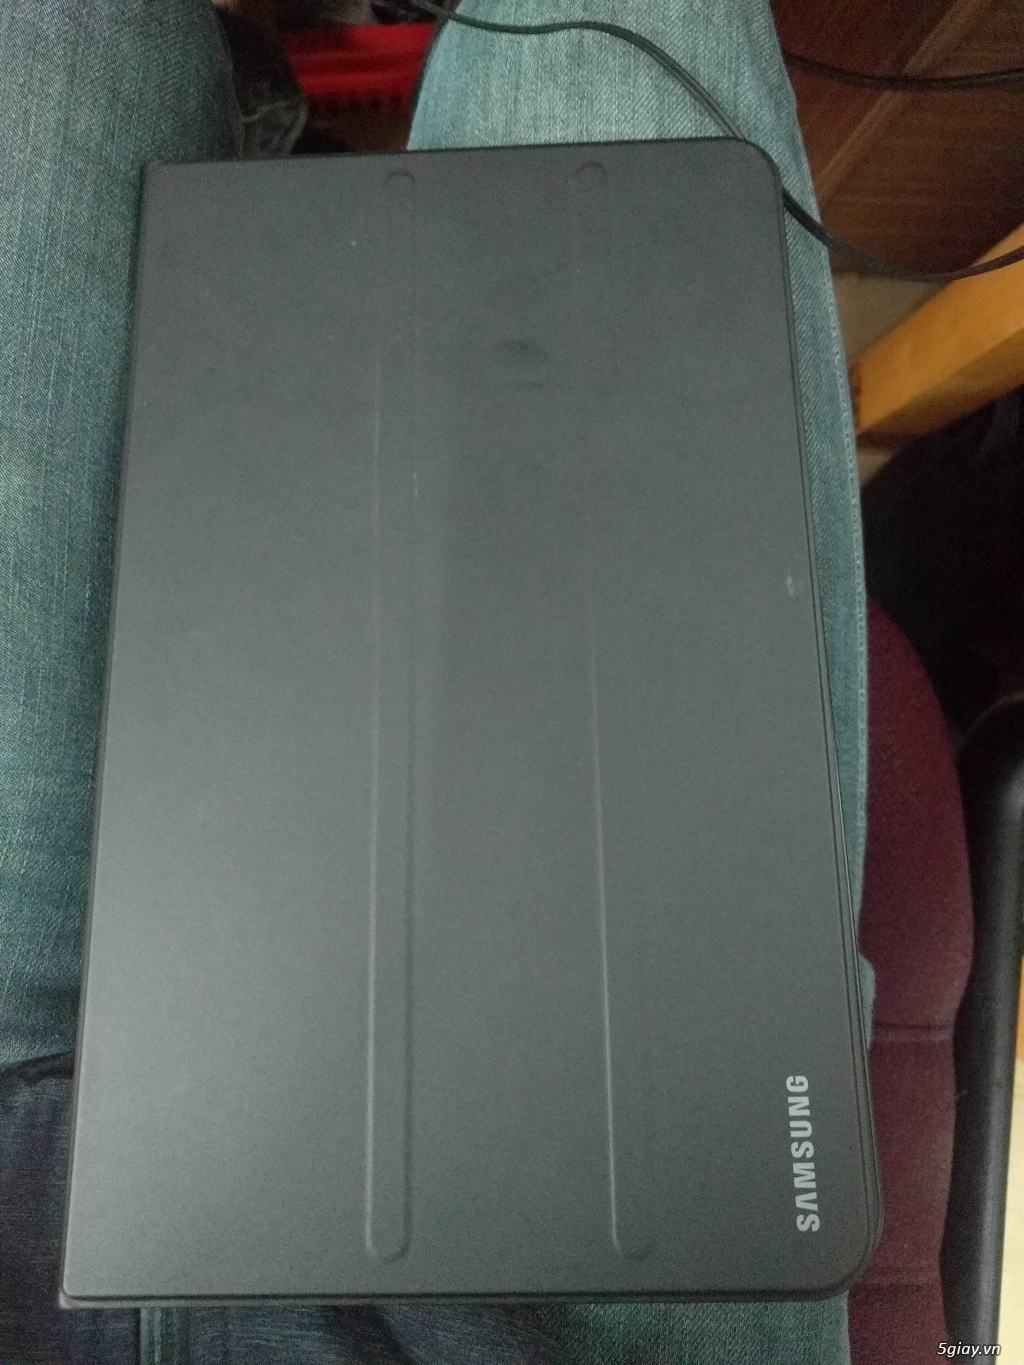 Samsung Galaxy Tab A 2016 SM-T580 16GB Wifi - 1